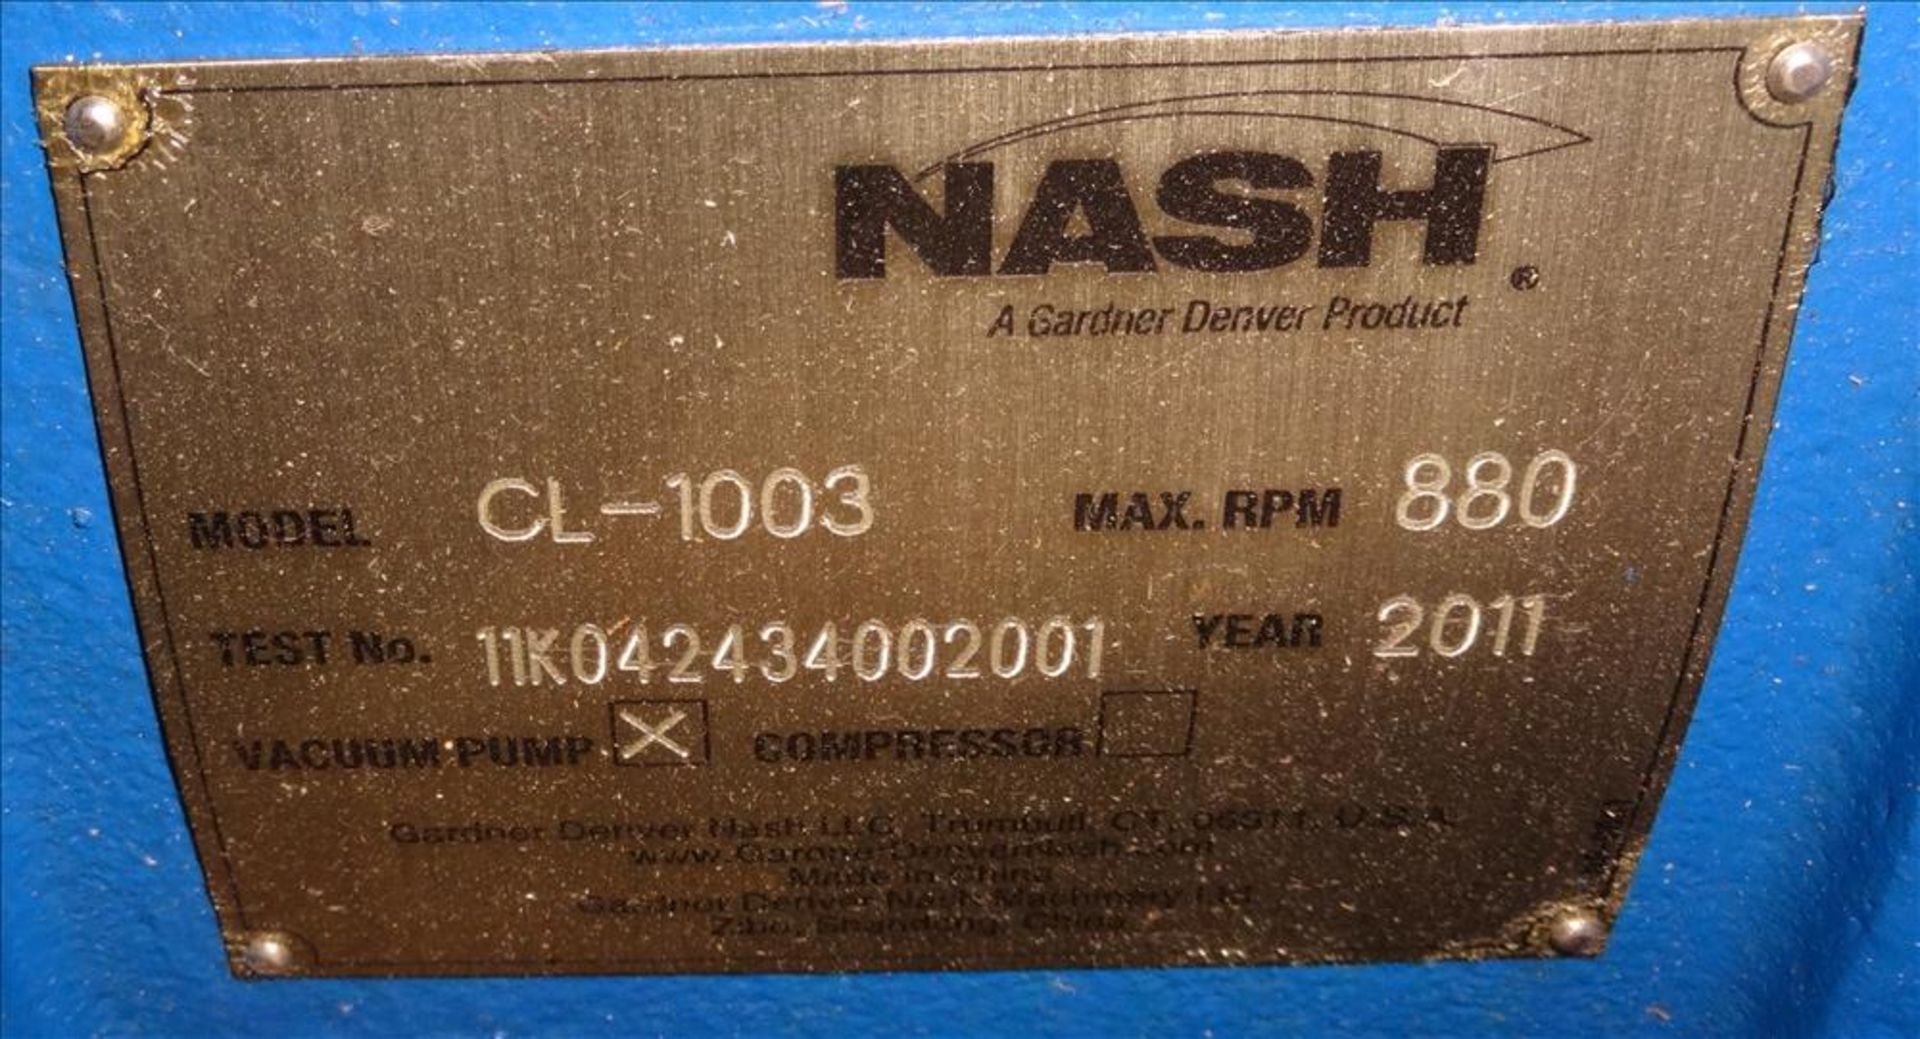 Unused Nash CL Series Liquid Ring Vacuum Pump - Image 6 of 6